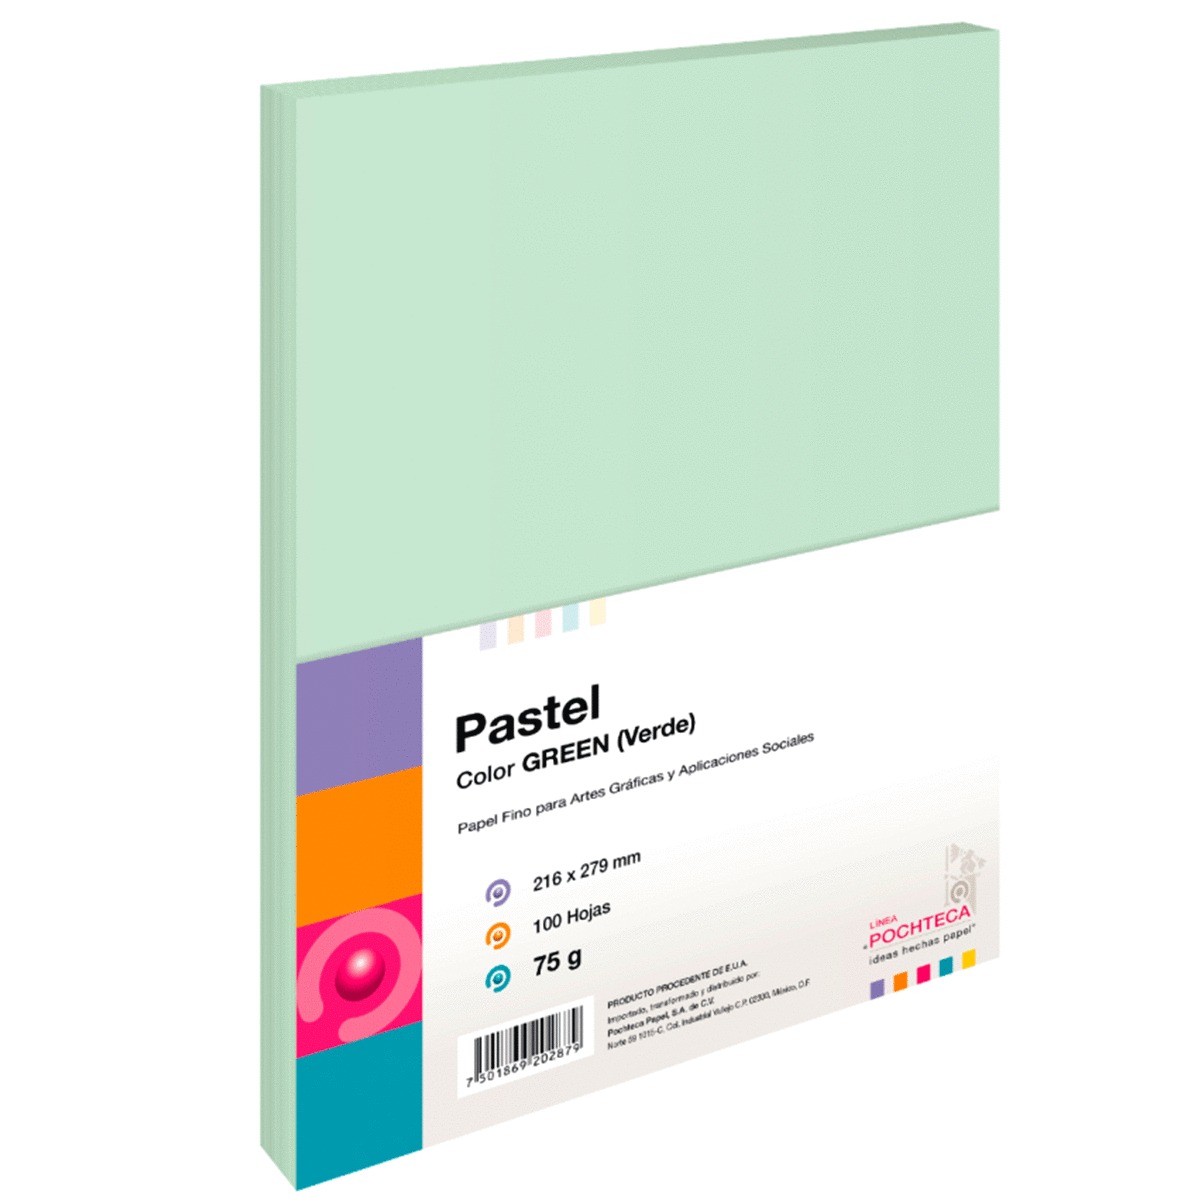 Hojas de Color Pochteca Pastel / Paquete 100 hojas / Carta / Verde pastel / 75 gr